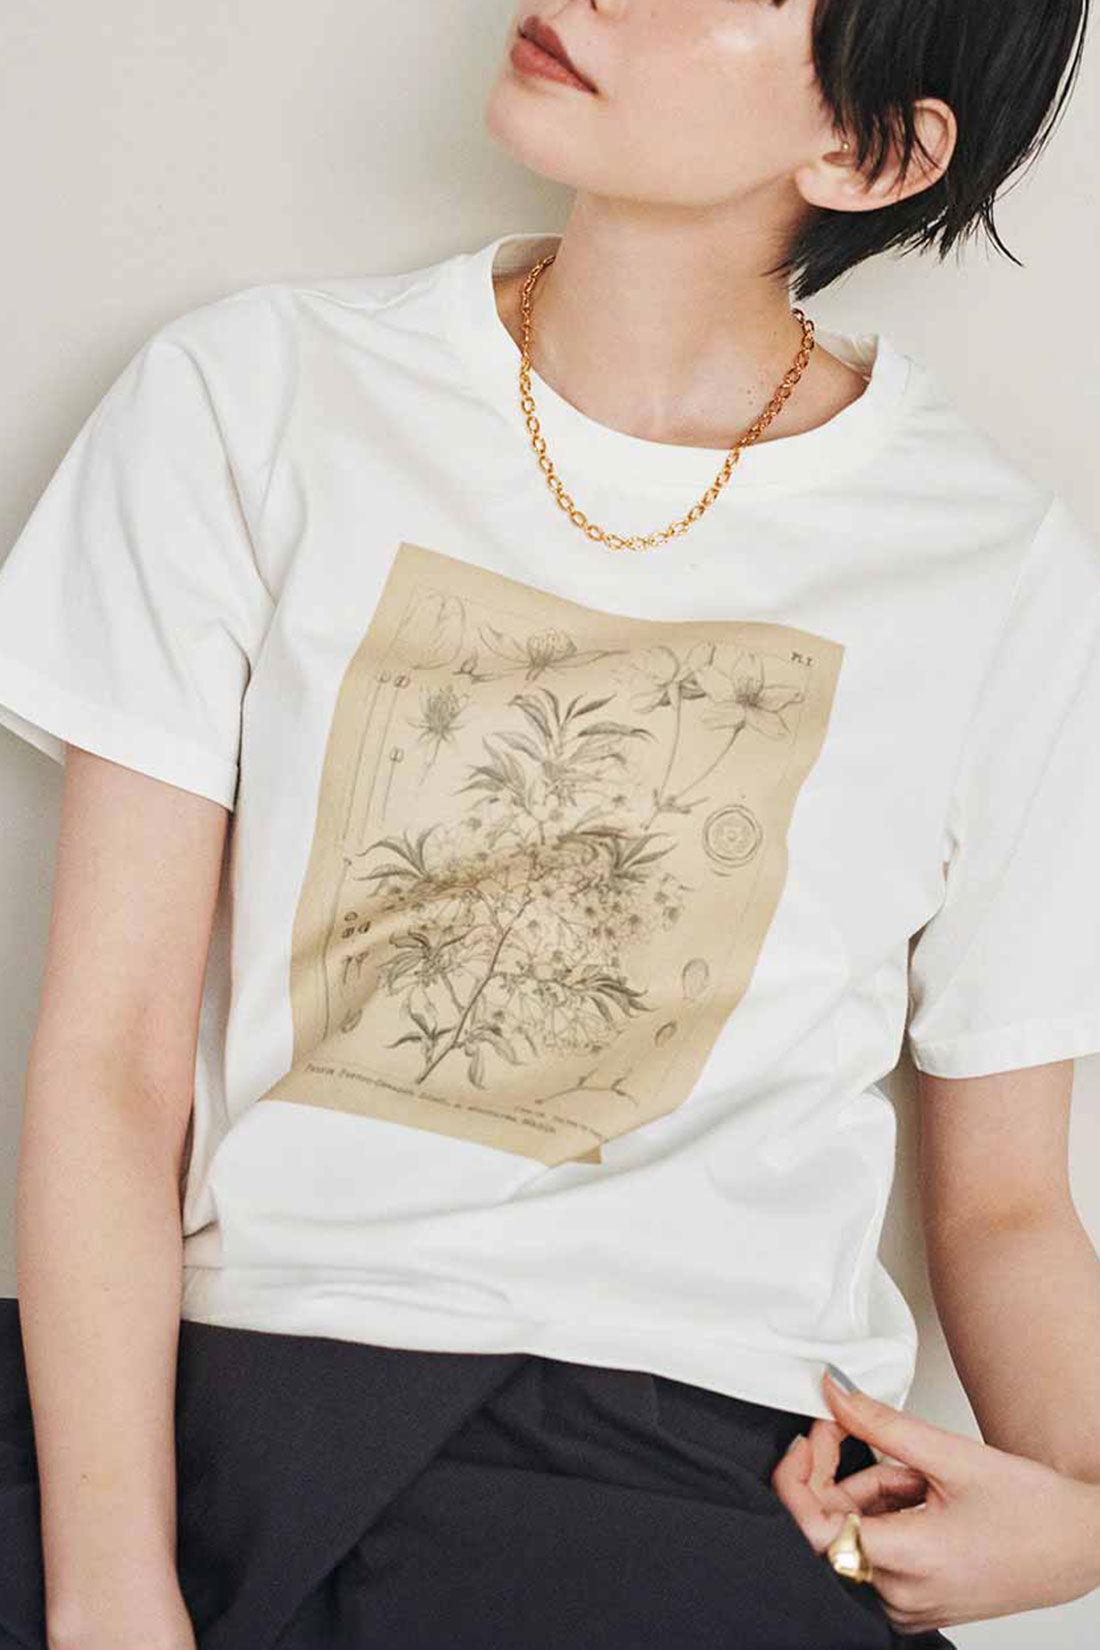 イディット|牧野植物園×IEDIT[イディット]コラボ　植物図Tシャツ〈ヤマザクラ〉